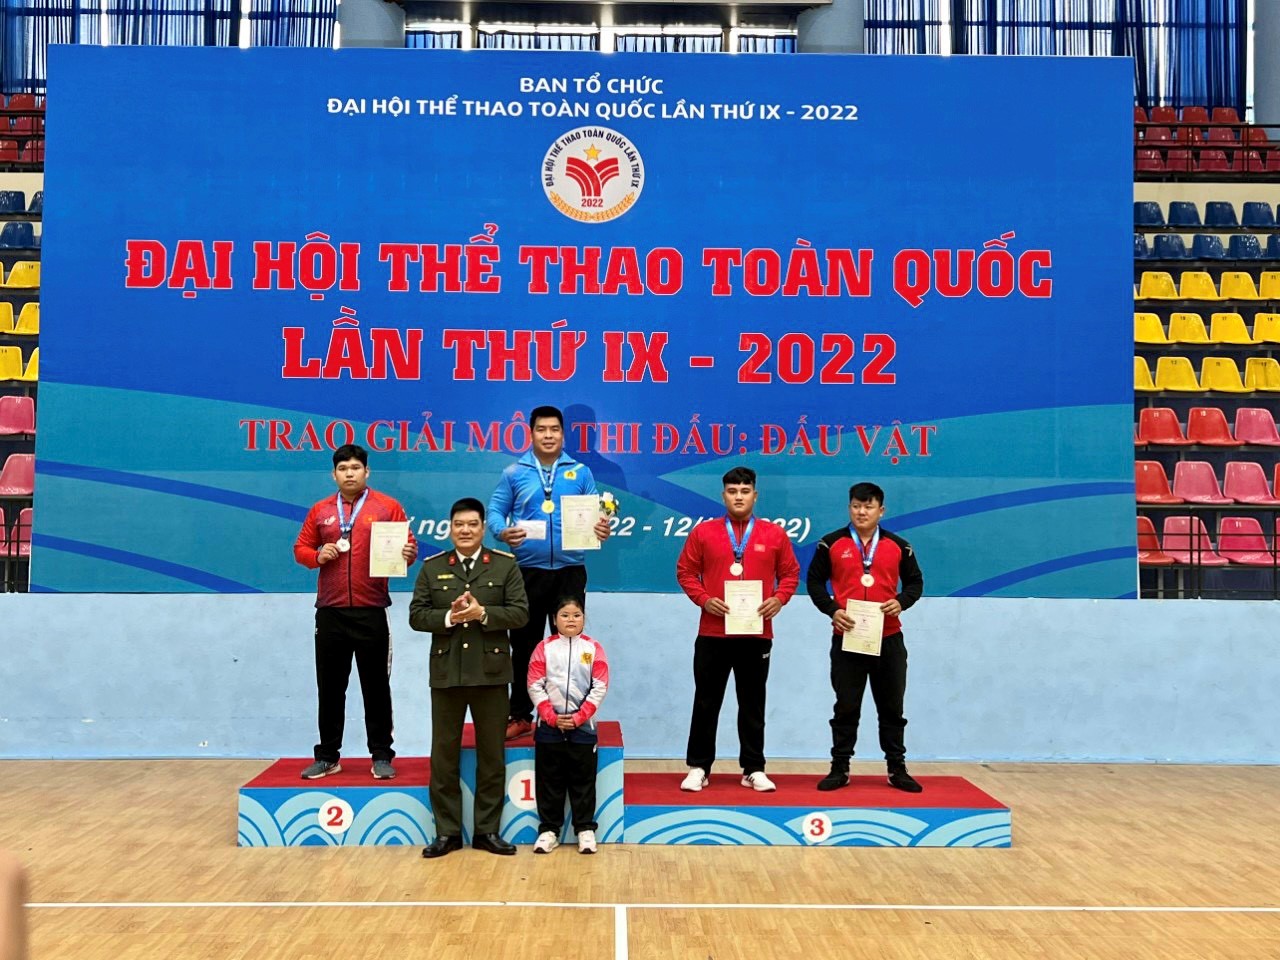 Đoàn vận động viên tỉnh Ninh Bình kết thúc thi đấu Đại hội thể thao toàn quốc lần thứ IX năm 2022.